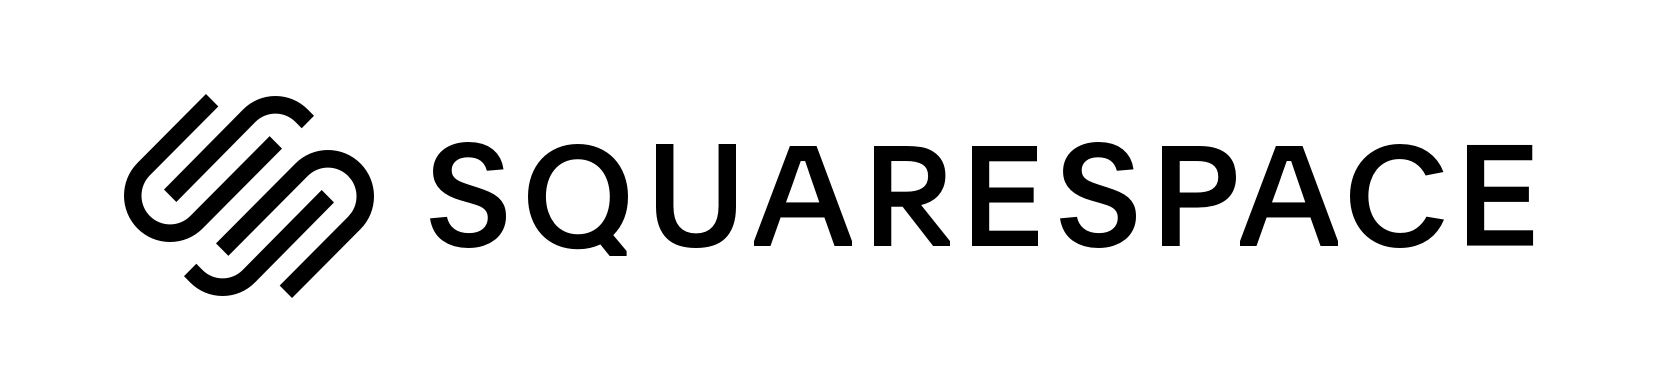 squarespace logo horizontal black - Những gì các nhà cung cấp dịch vụ cưới đã học được trong một năm không có đám cưới *